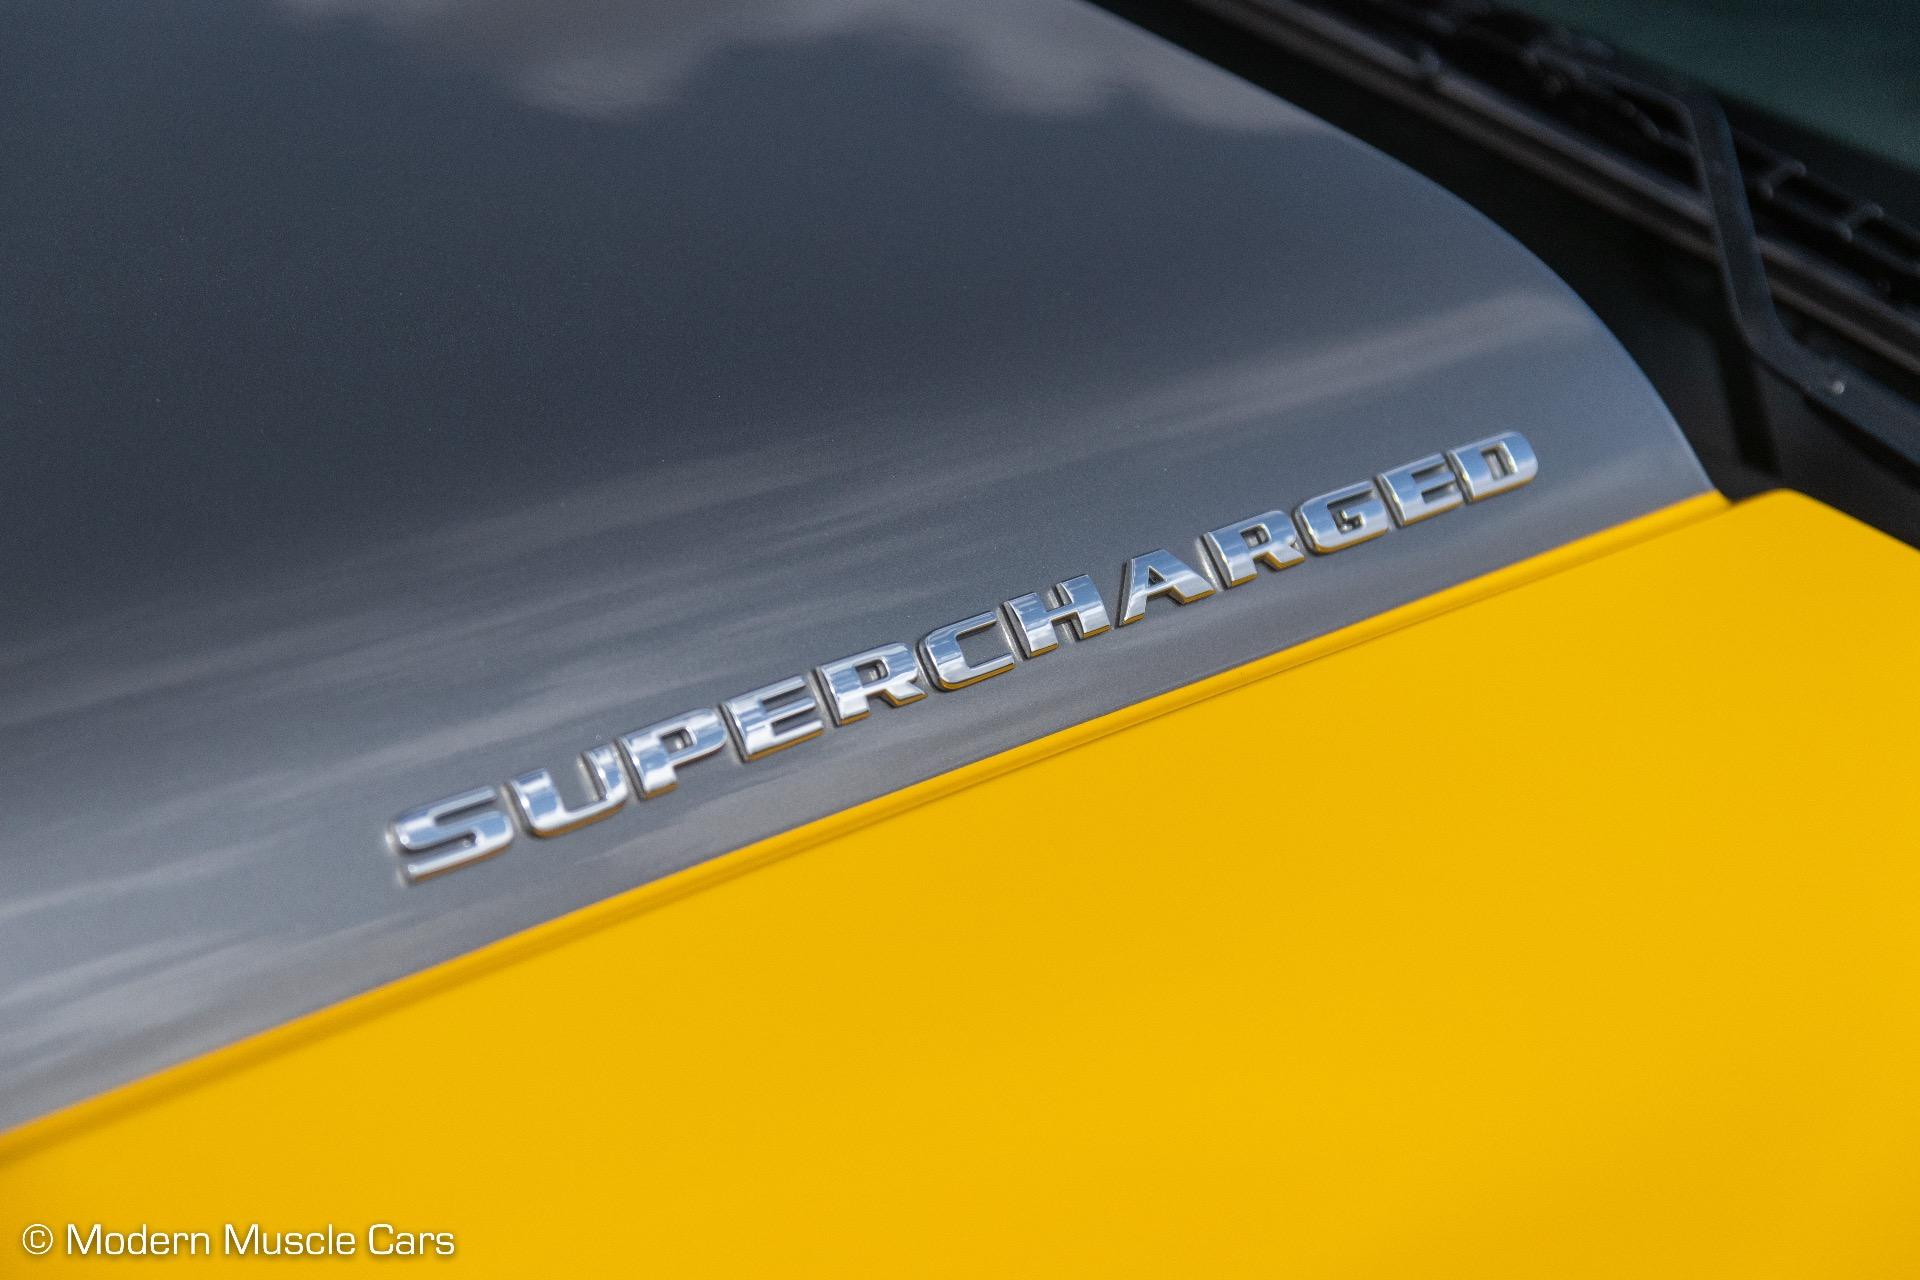 2011 CHEVROLET Corvette Coupe - $52,900